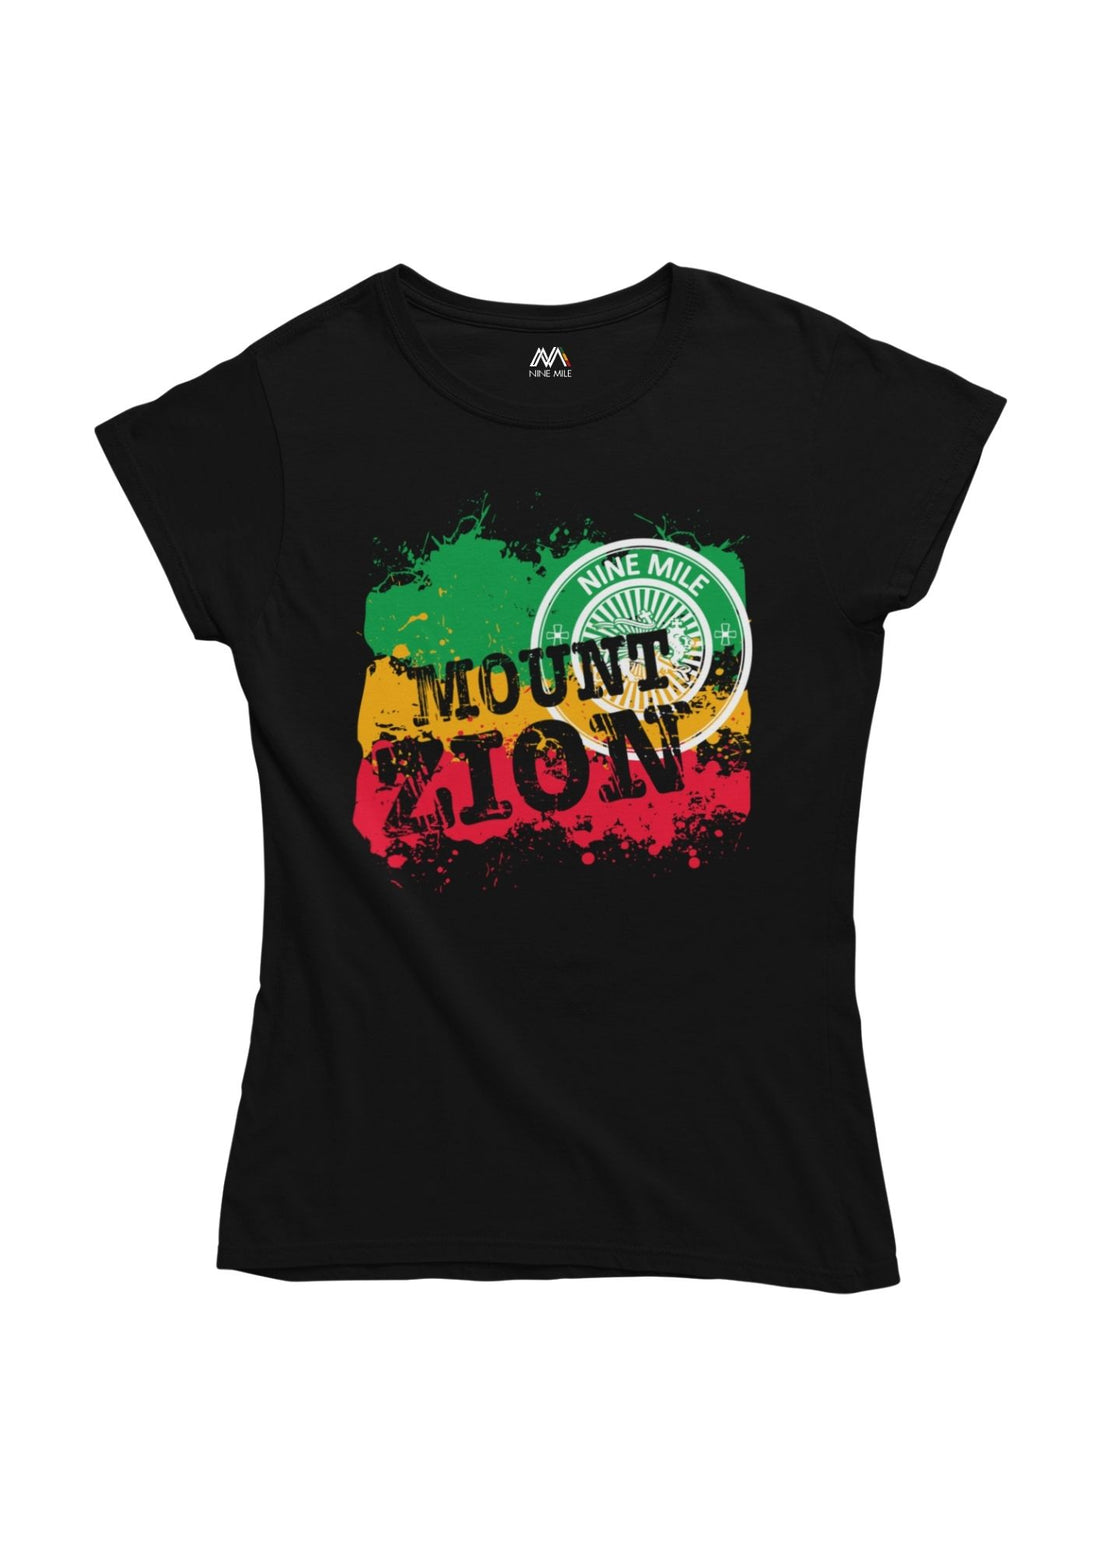 Nine Mile 'Mount Zion' T-shirt - Nine Mile Clothing 